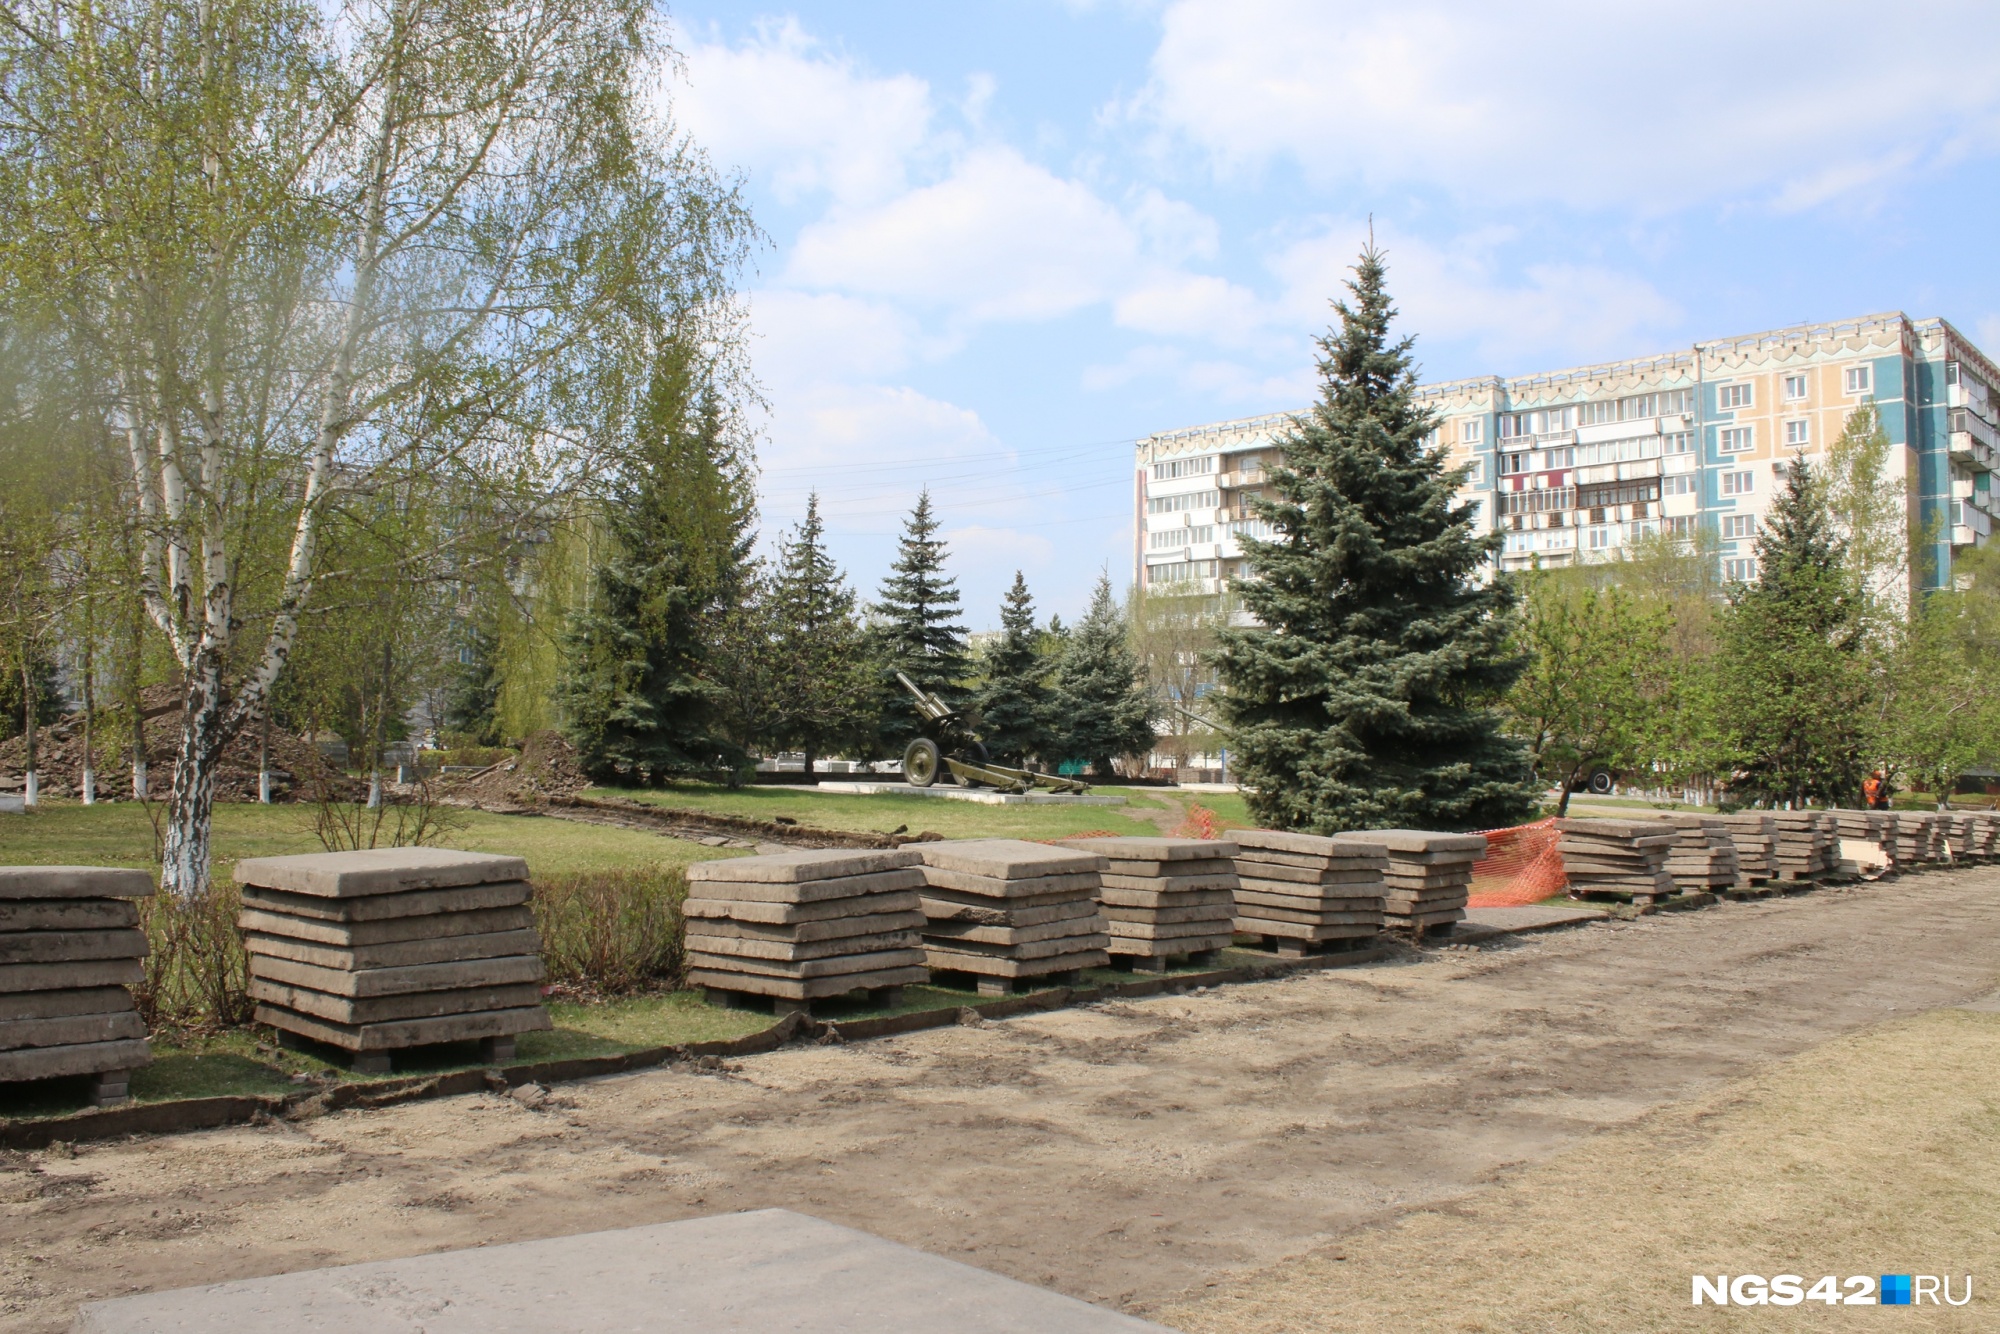 Власти Новокузнецка выделили почти 400 млн рублей на реконструкцию сквера и установку стелы